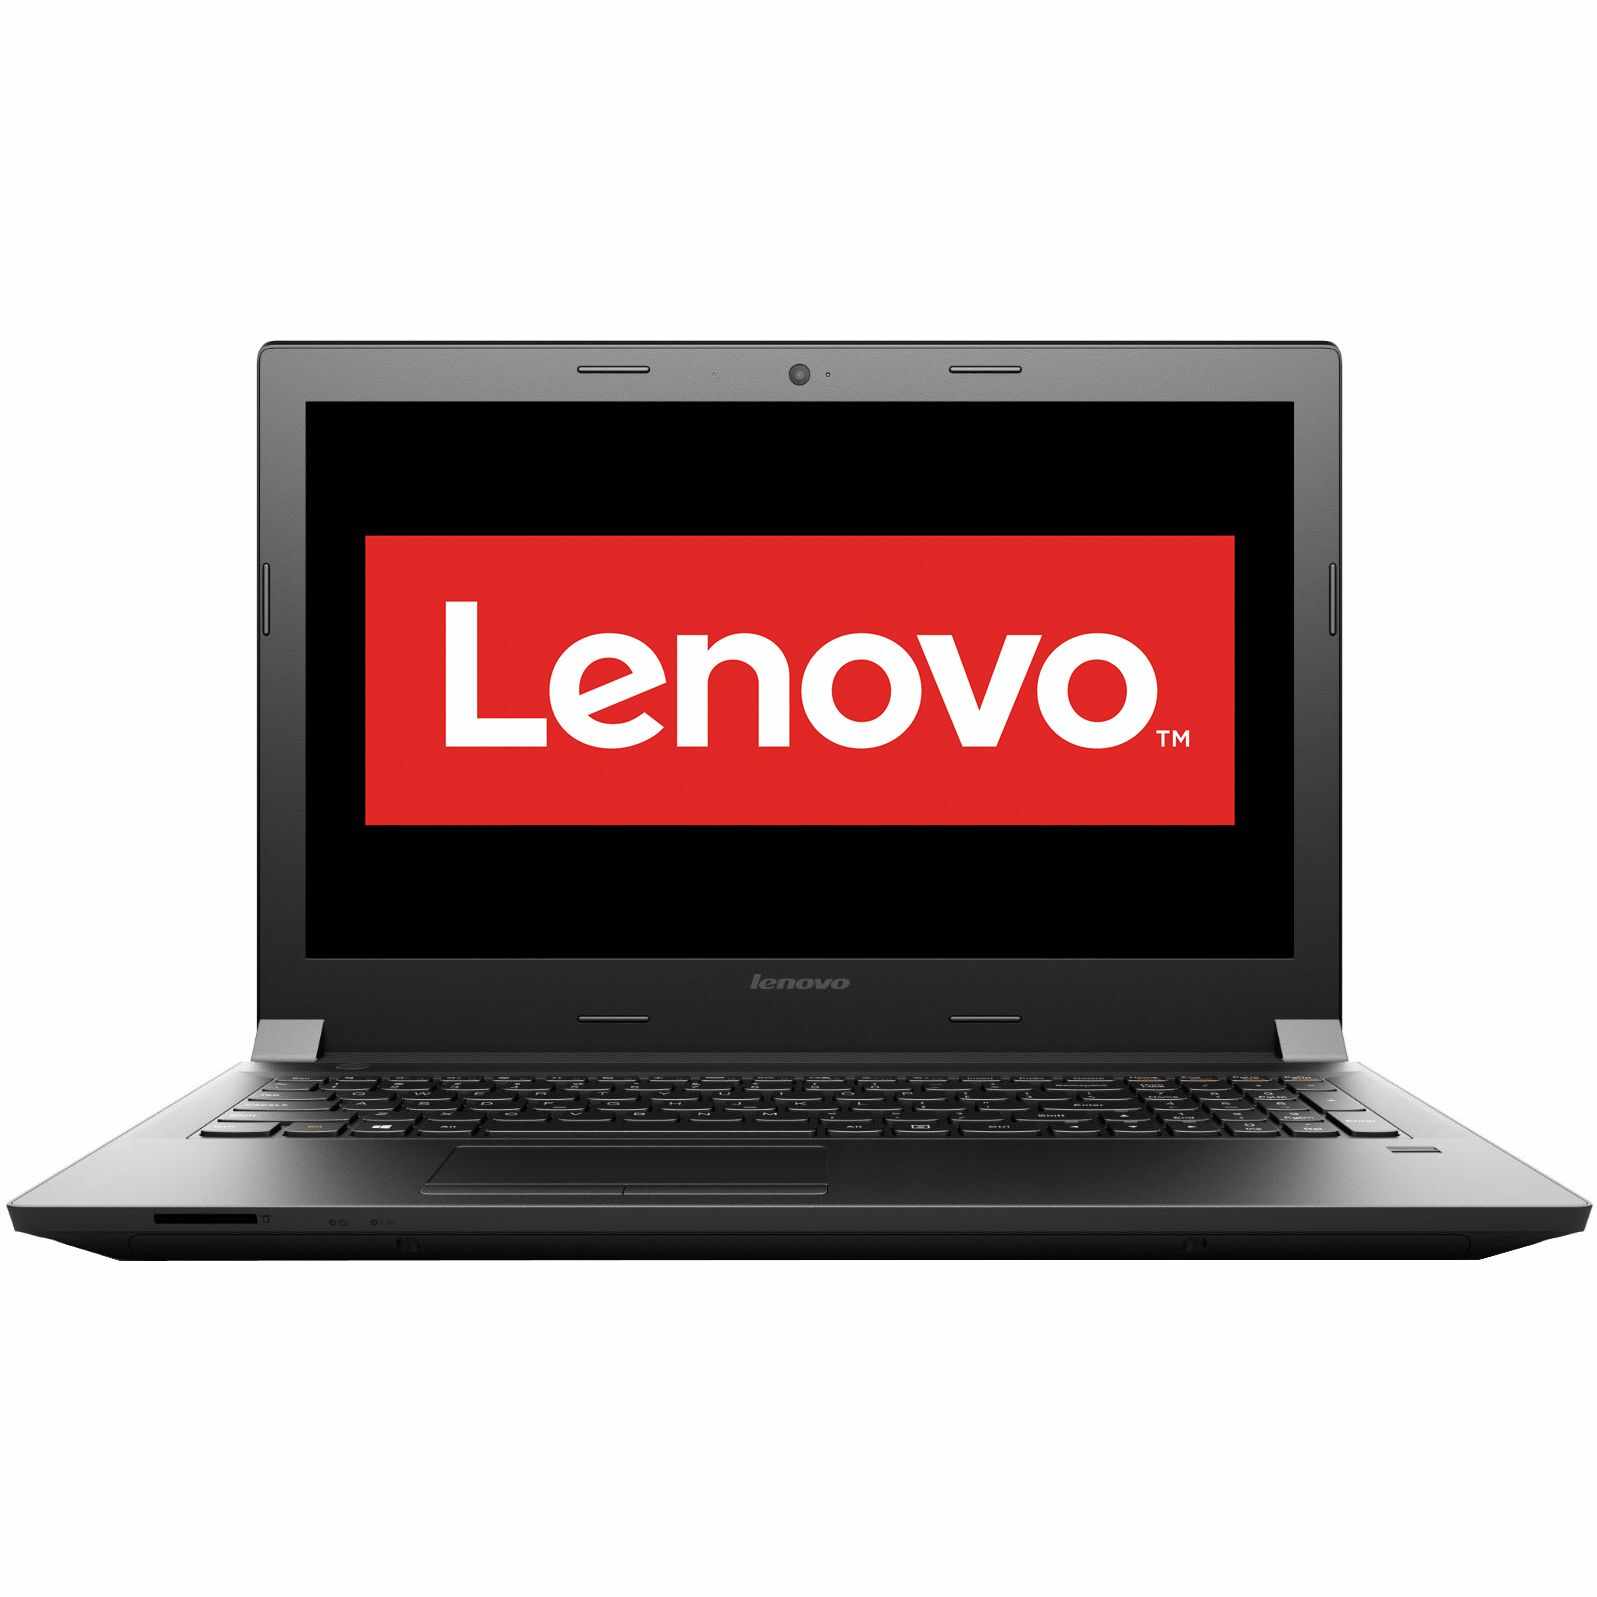 Laptop Lenovo B50-80, Intel Core i3-4005U 1.70GHz, 4GB DDR3, 500GB SATA, DVD-RW, 15.6 Inch, Webcam